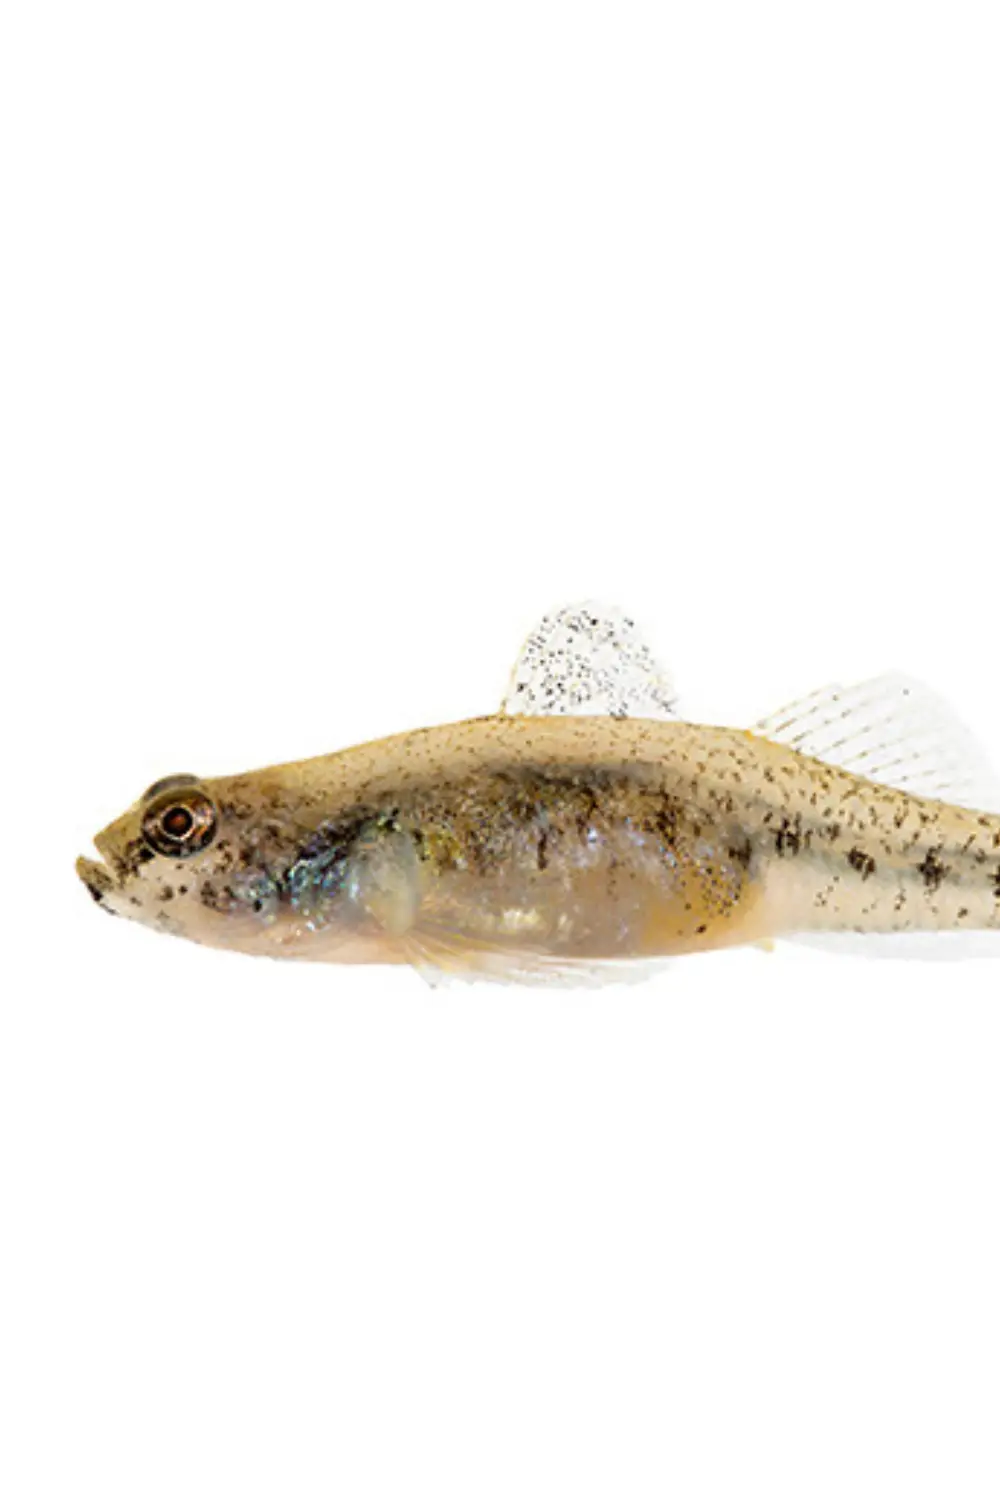 De aukasische dwerggrondel vis